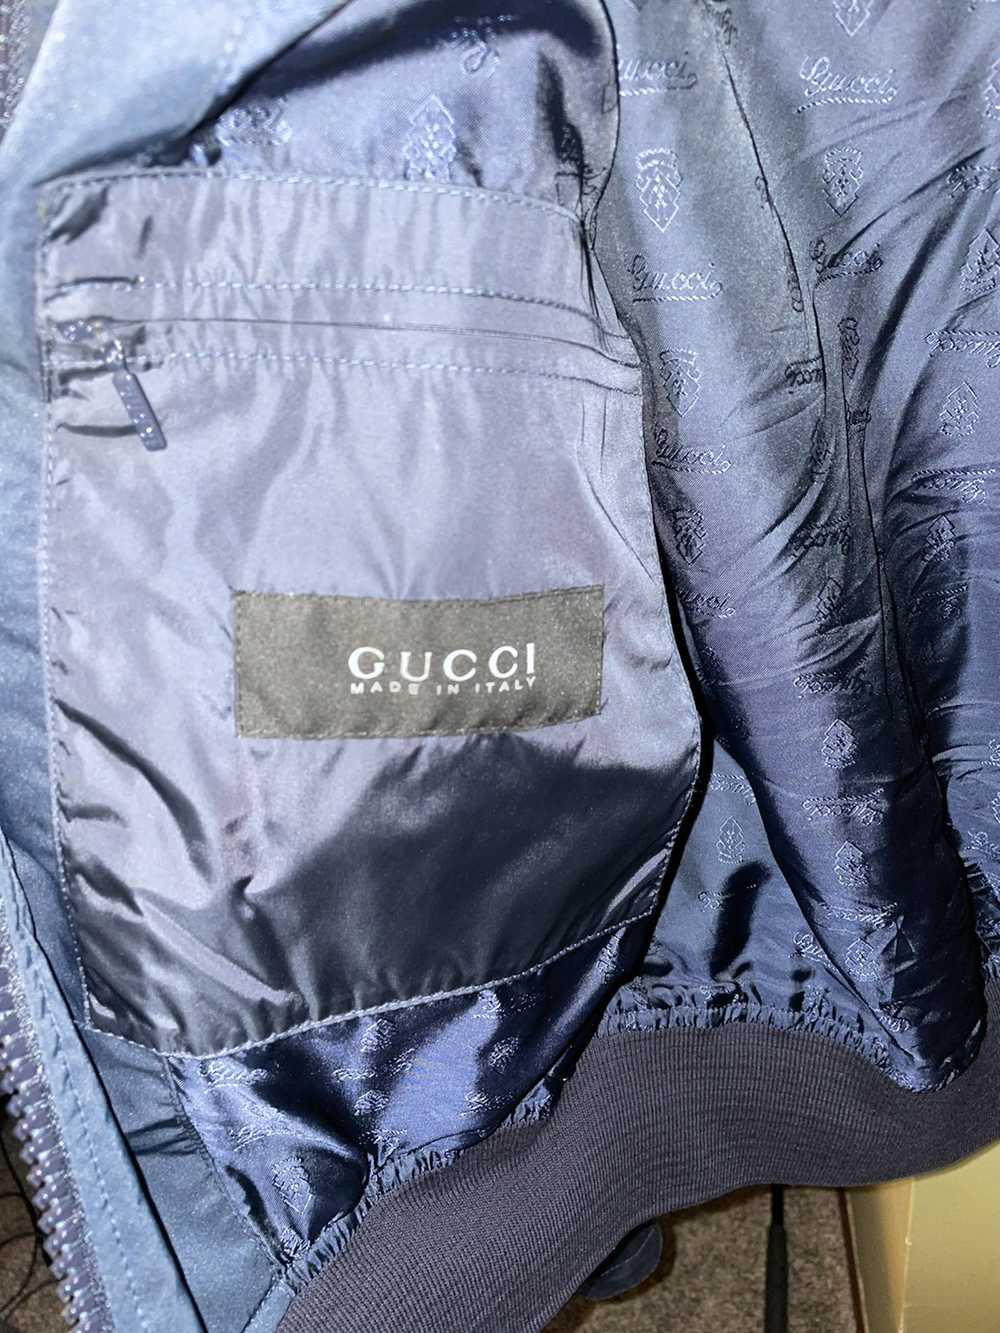 Gucci Gucci Flight Bomber - image 2